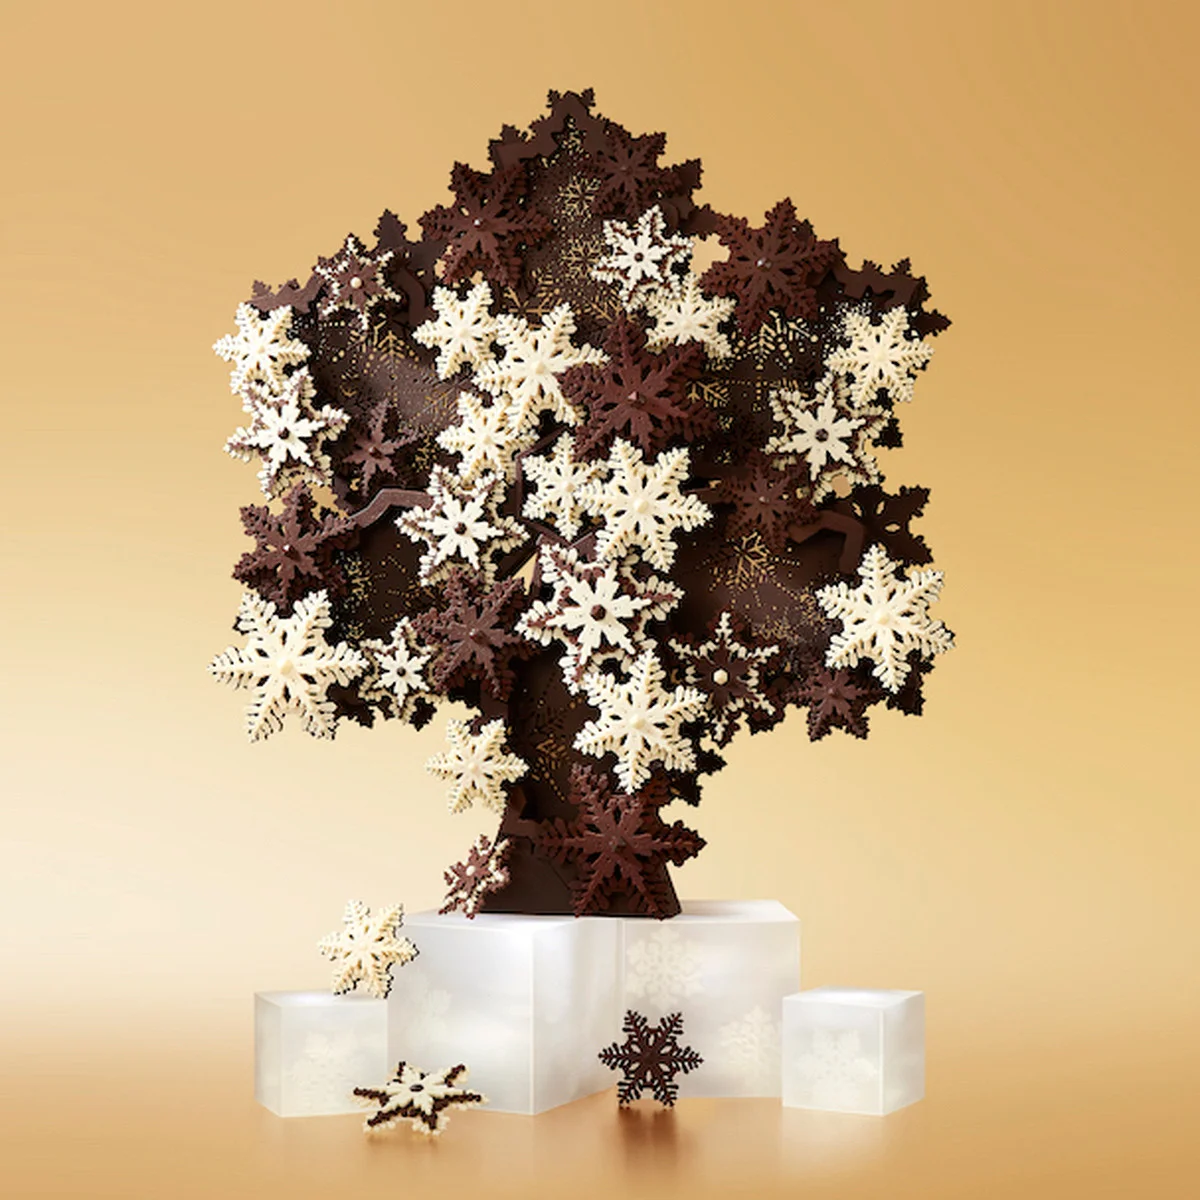 【ラ・メゾン・ デュ・ショコラ】より、雪の結晶をモチーフにしたクリスマスコレクション「ノエル ジヴレ」が登場